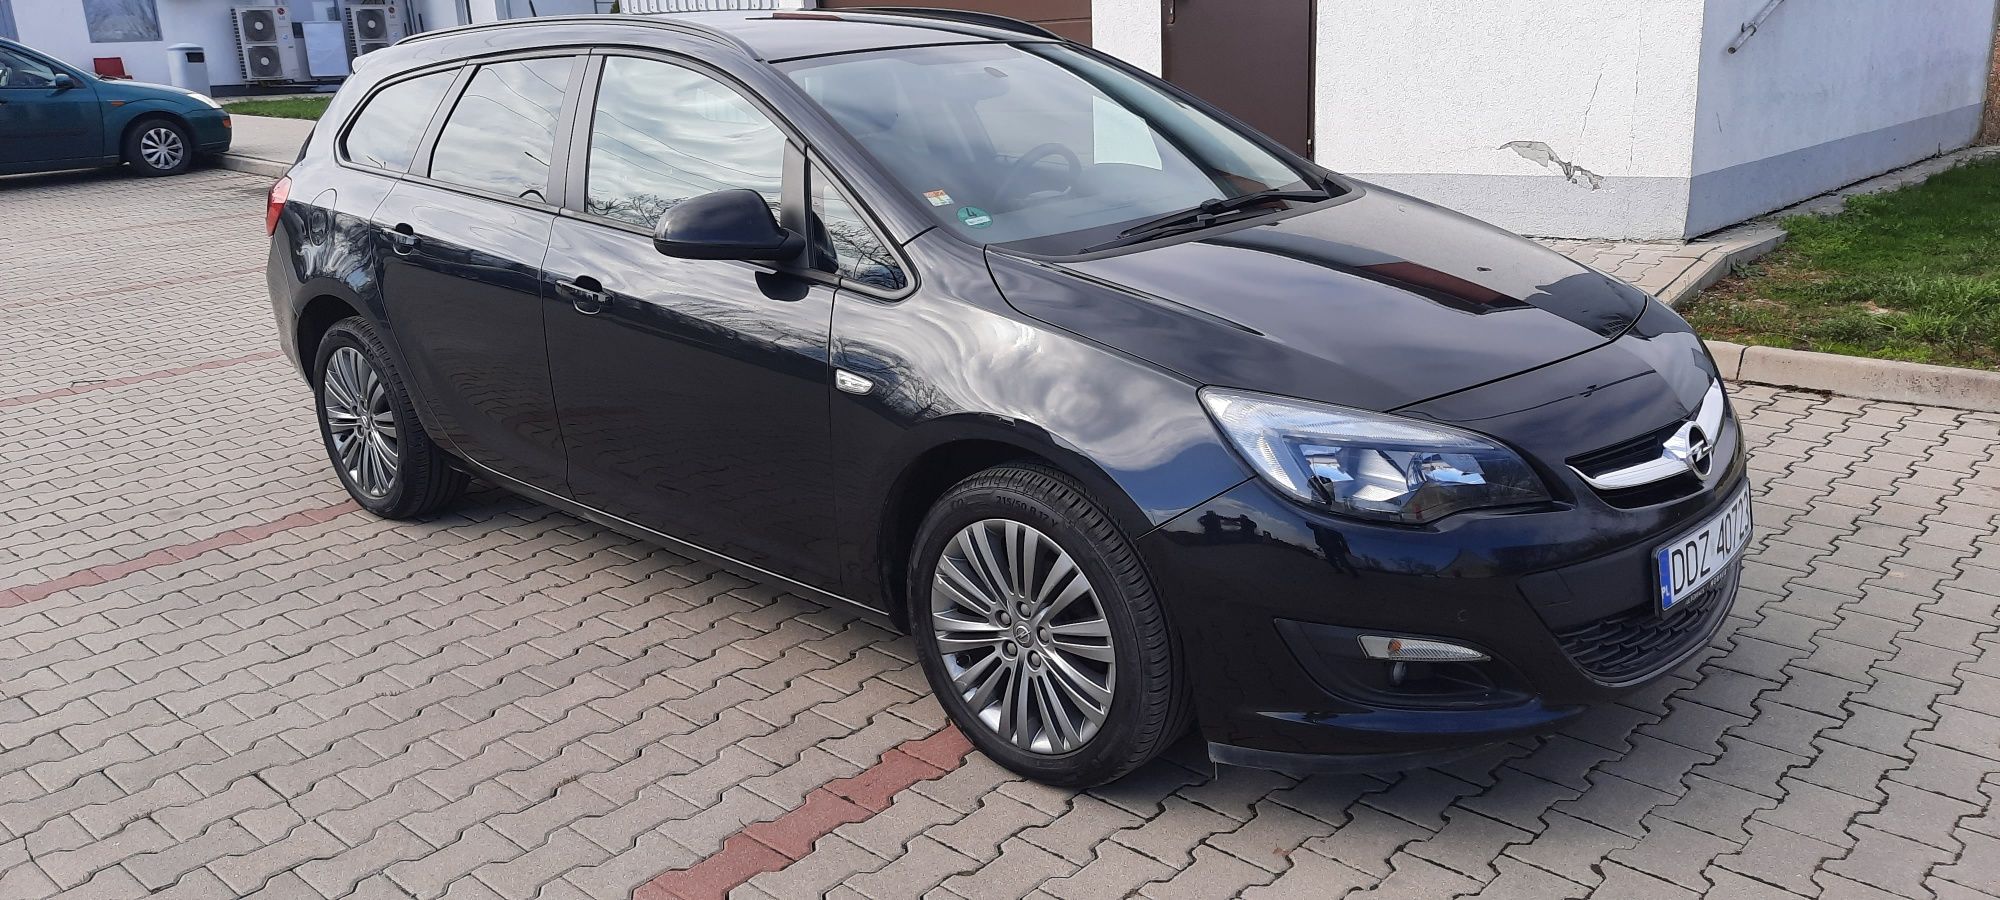 Opel Astra 1,4 benzyna turbo, kombi , zarejestrowana , bezwypadkowa